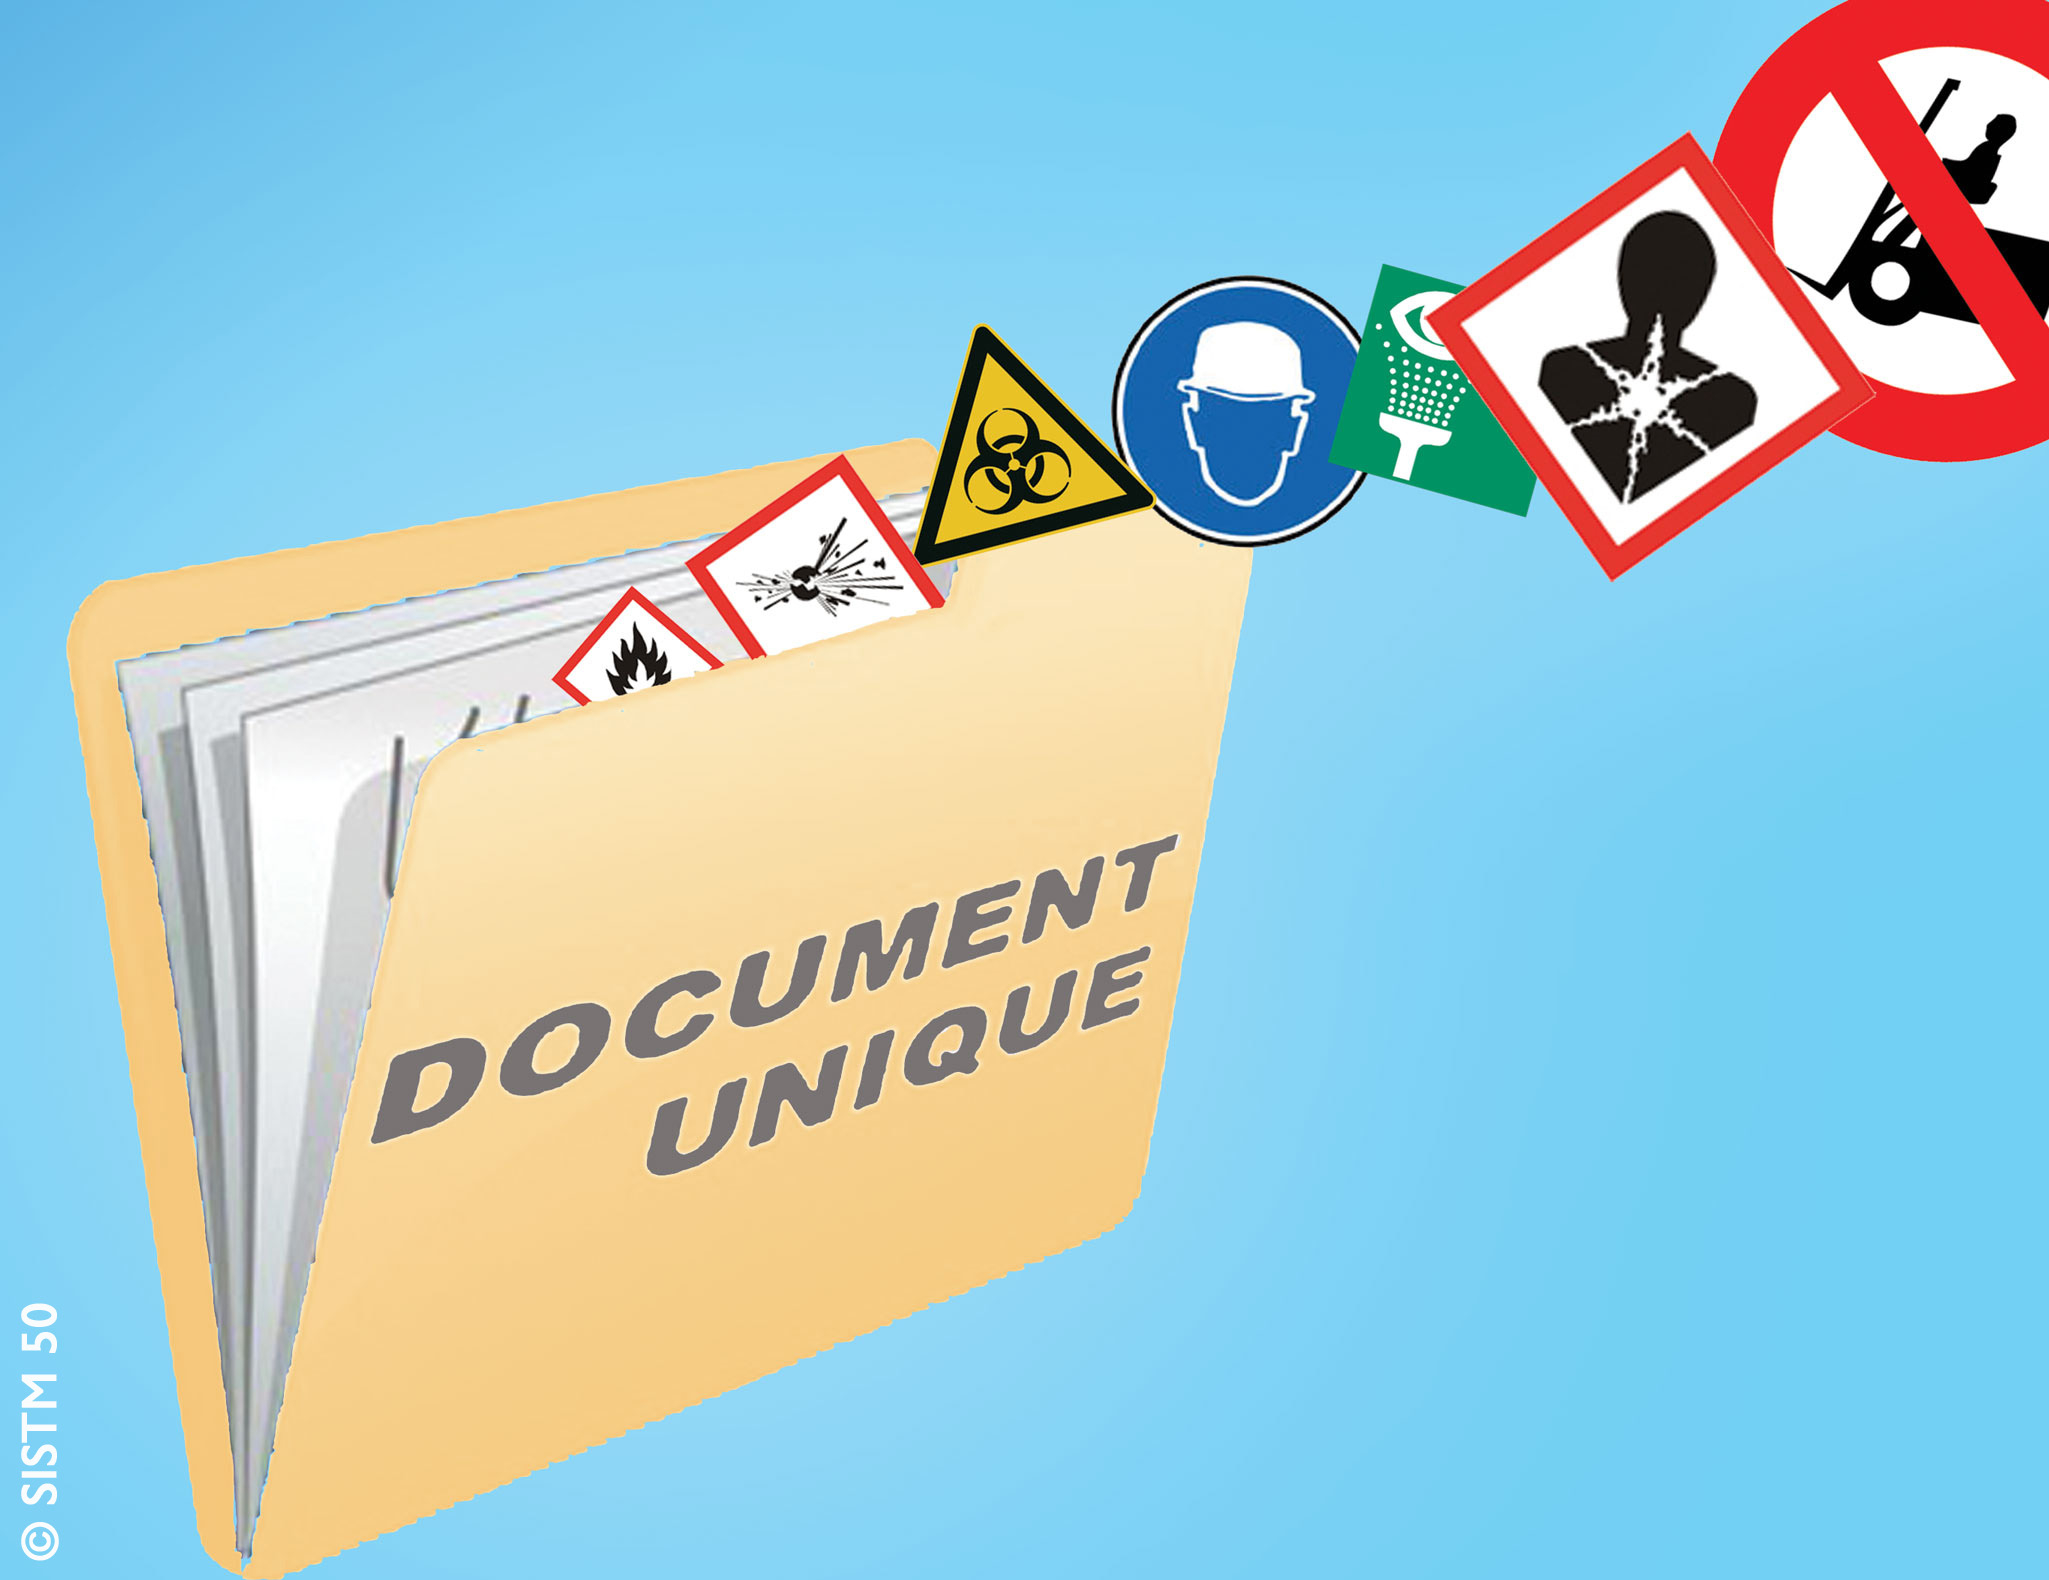 document unique